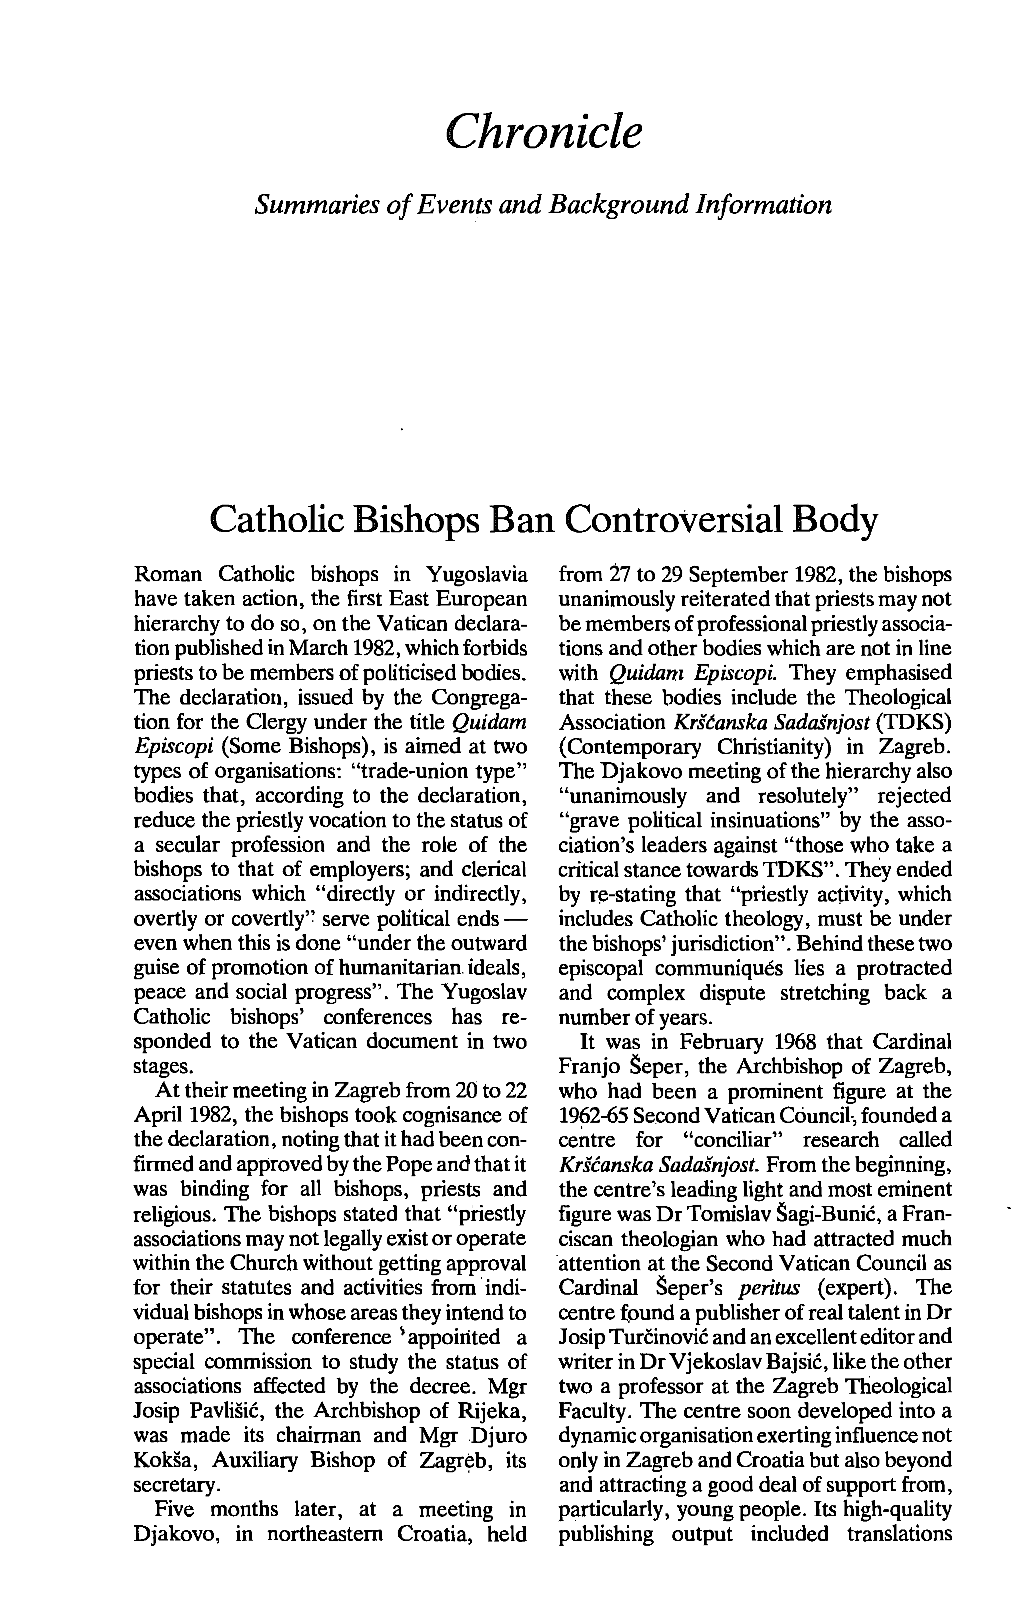 Catholic Bishops Ban Controversial Body